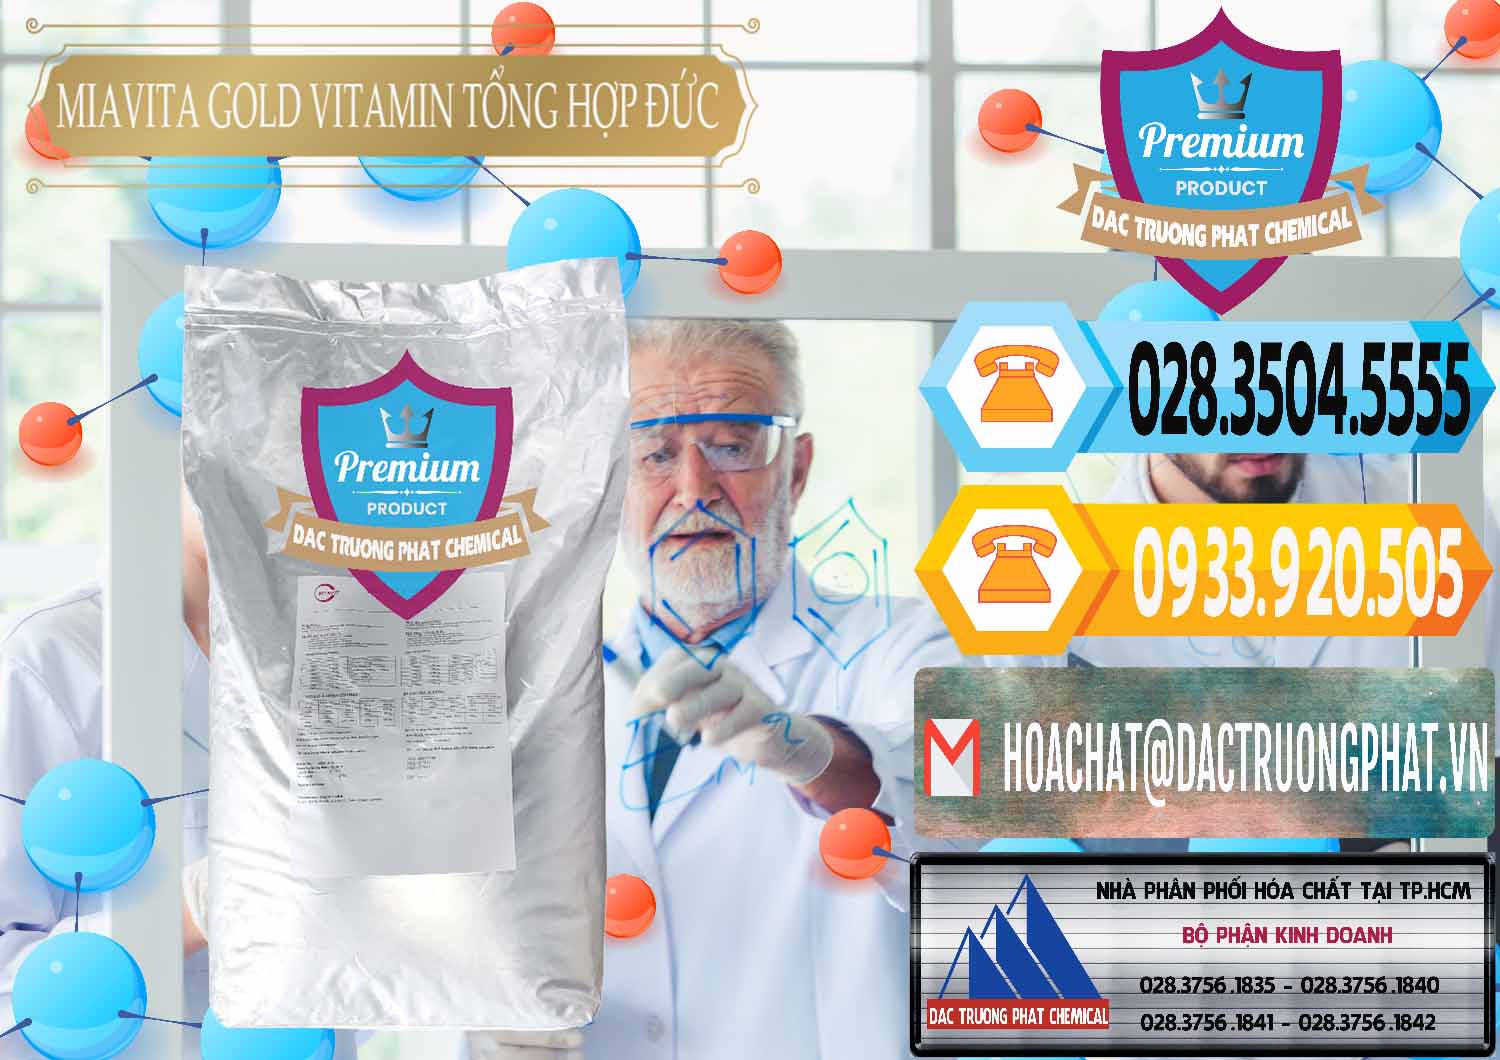 Chuyên bán và phân phối Vitamin Tổng Hợp Miavita Gold Đức Germany - 0307 - Đơn vị phân phối - cung cấp hóa chất tại TP.HCM - hoachattayrua.net